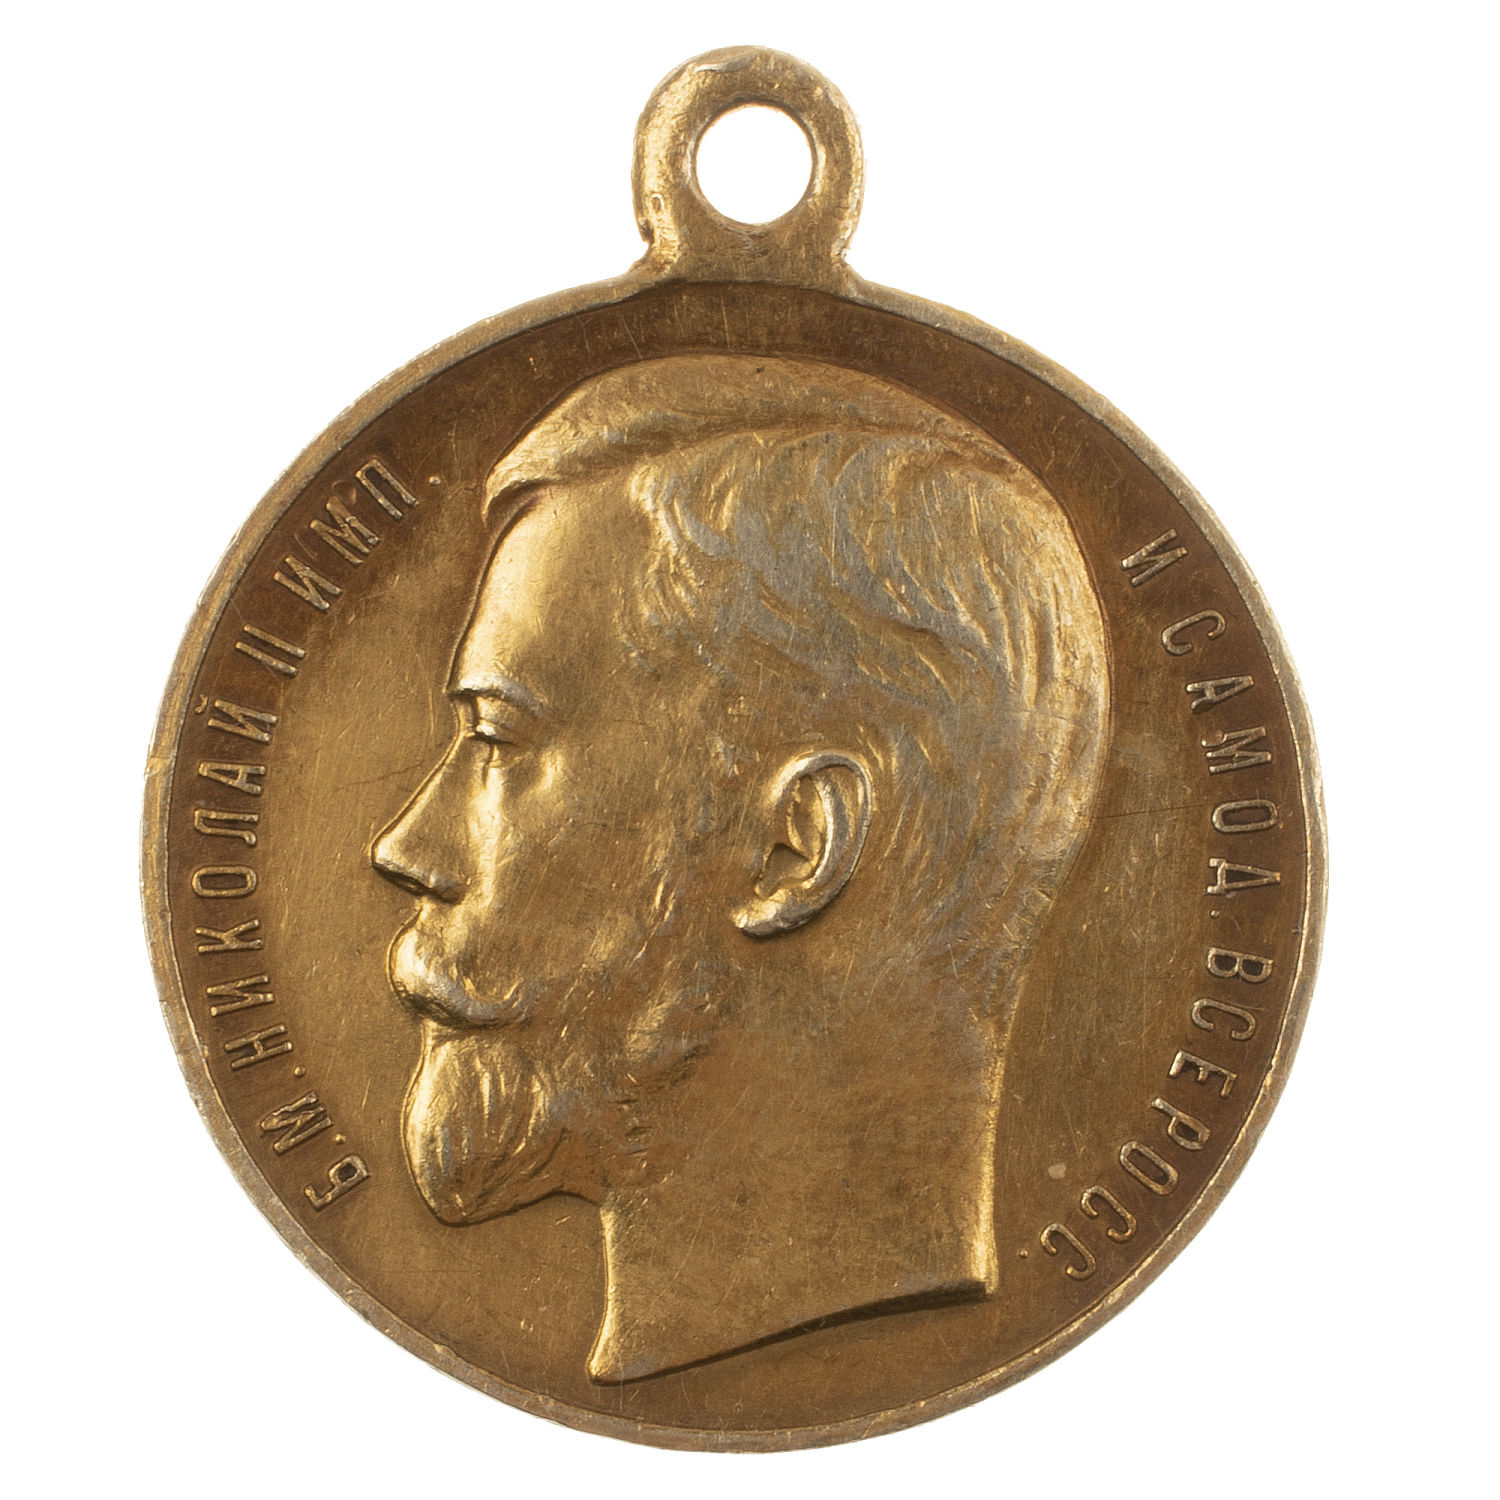 Медаль "За Усердие" с портретом Императора Николая II (образца 1915 г). Золото, 56".